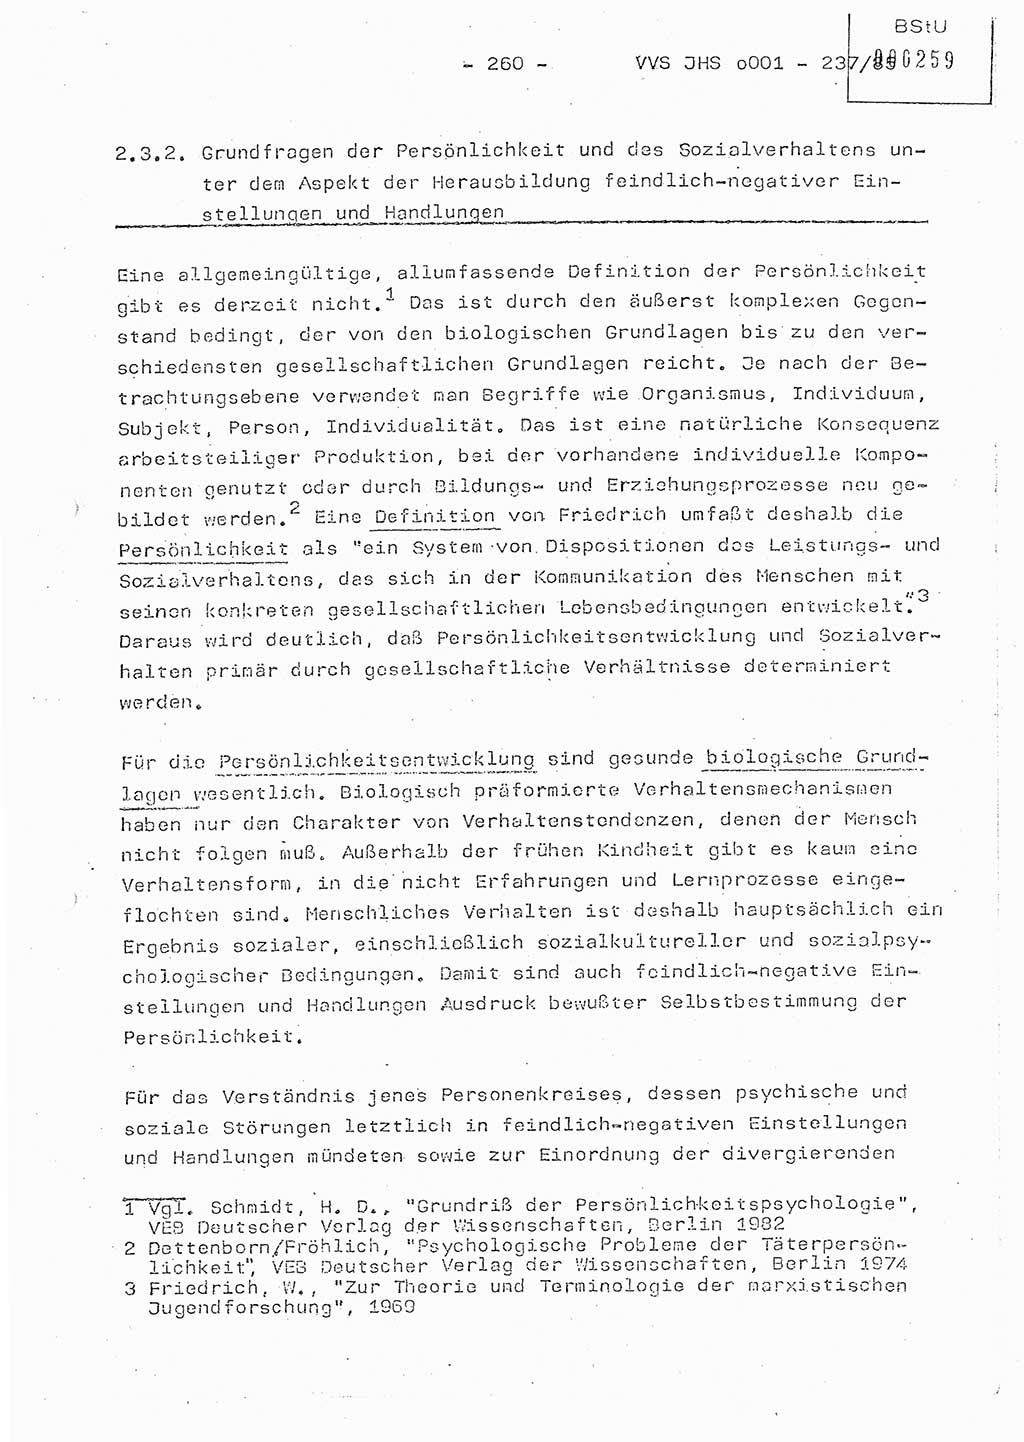 Dissertation Oberstleutnant Peter Jakulski (JHS), Oberstleutnat Christian Rudolph (HA Ⅸ), Major Horst Böttger (ZMD), Major Wolfgang Grüneberg (JHS), Major Albert Meutsch (JHS), Ministerium für Staatssicherheit (MfS) [Deutsche Demokratische Republik (DDR)], Juristische Hochschule (JHS), Vertrauliche Verschlußsache (VVS) o001-237/85, Potsdam 1985, Seite 260 (Diss. MfS DDR JHS VVS o001-237/85 1985, S. 260)